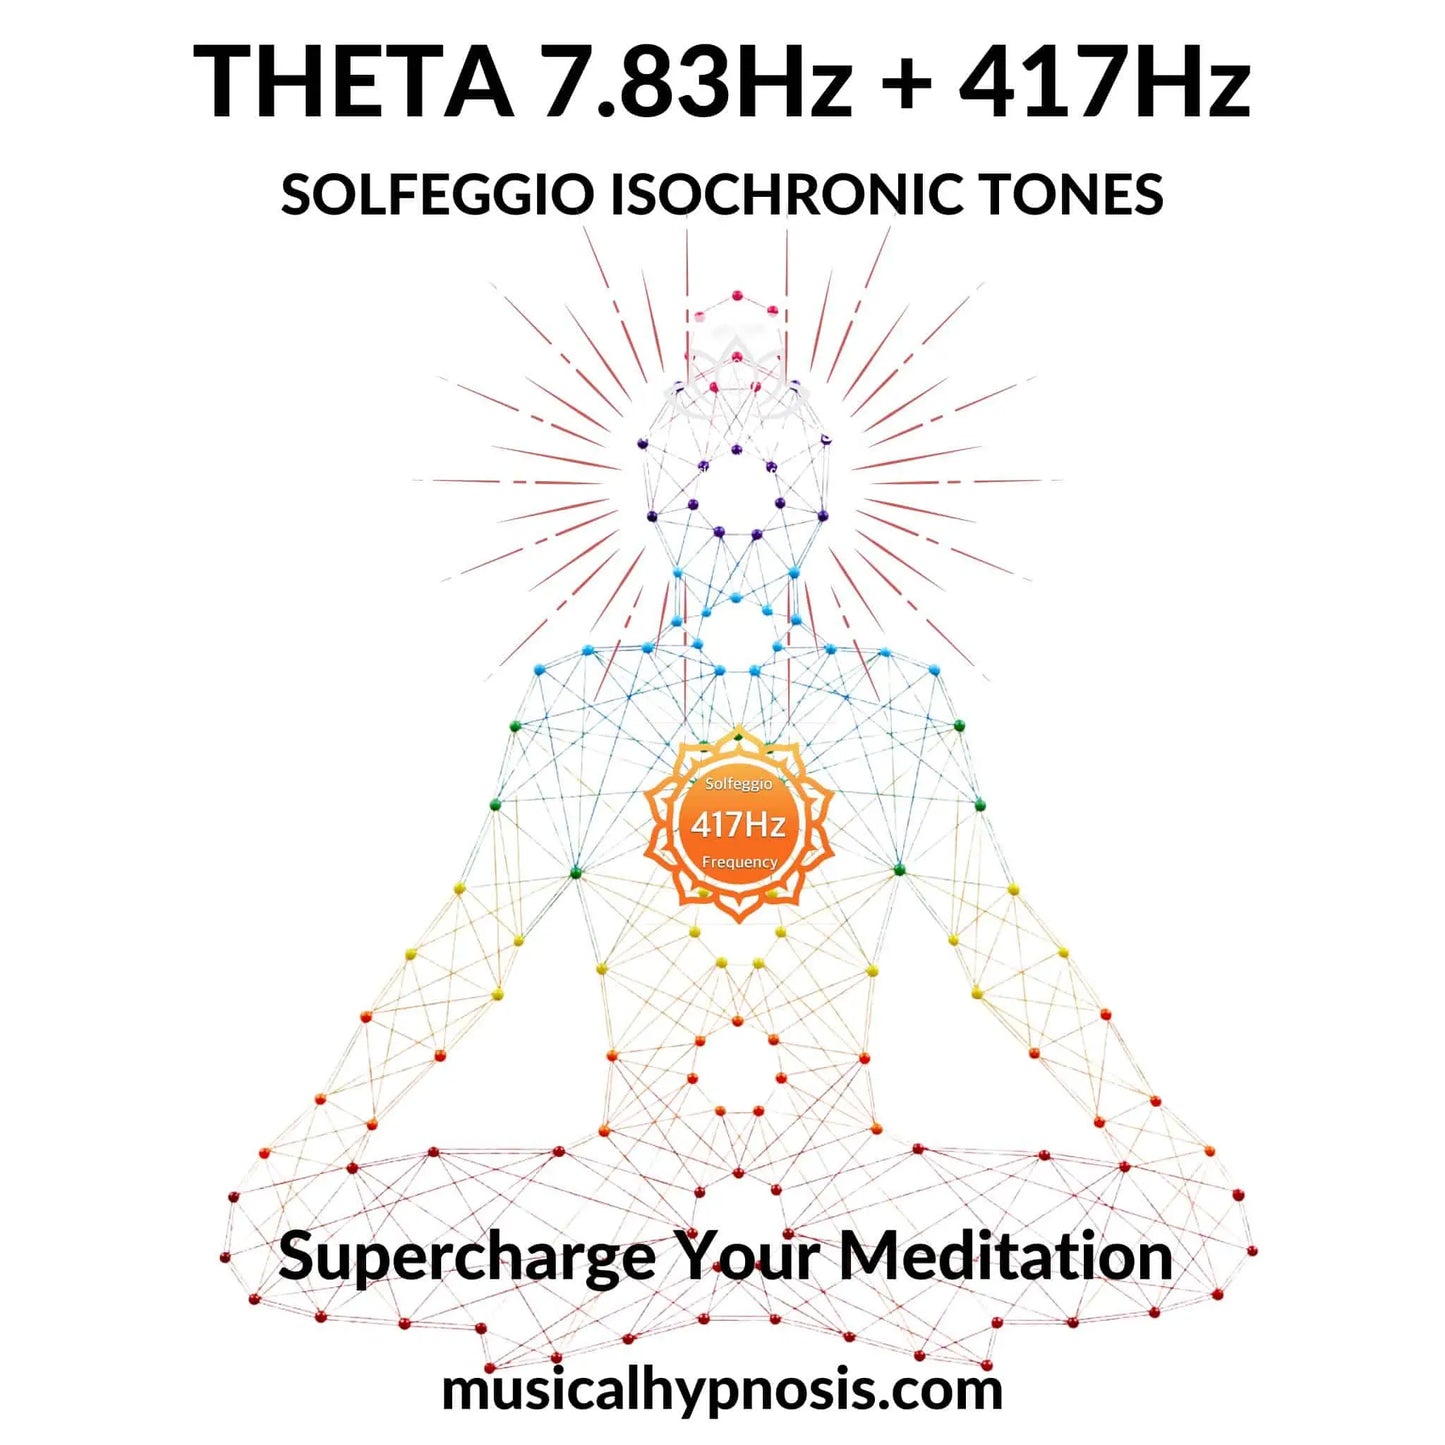 Theta 7.83Hz and 417Hz Solfeggio Isochronic Tones | 30 minutes